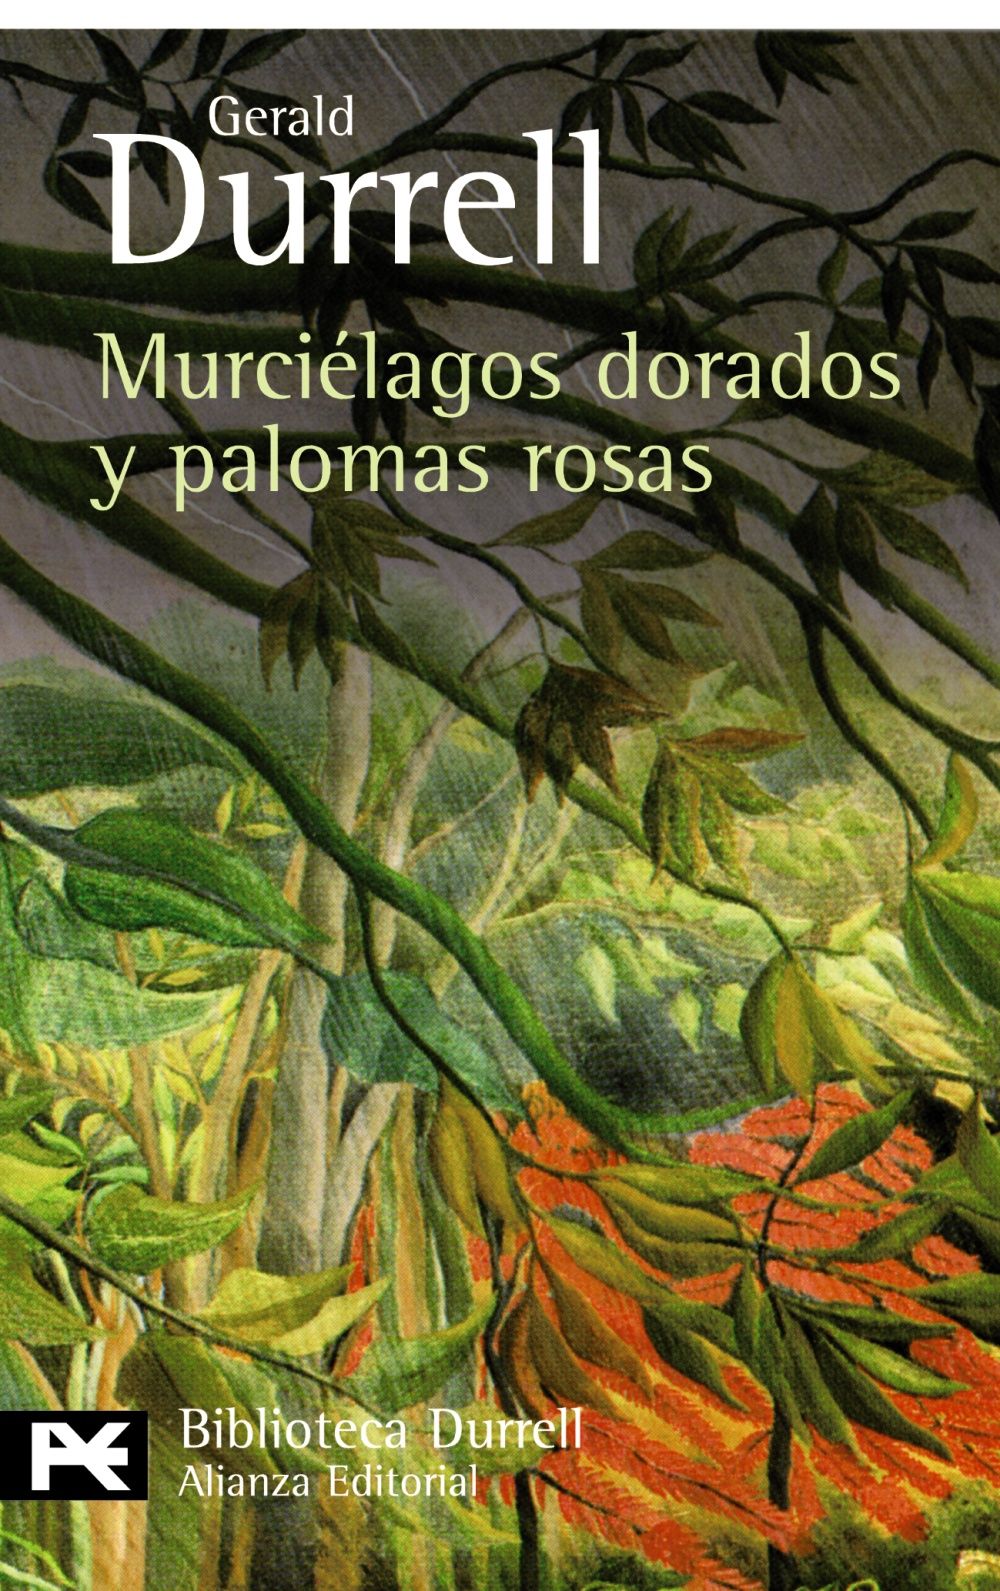 MURCIELAGOS-DORADOS-Y-PALOMAS-ROSAS.jpg